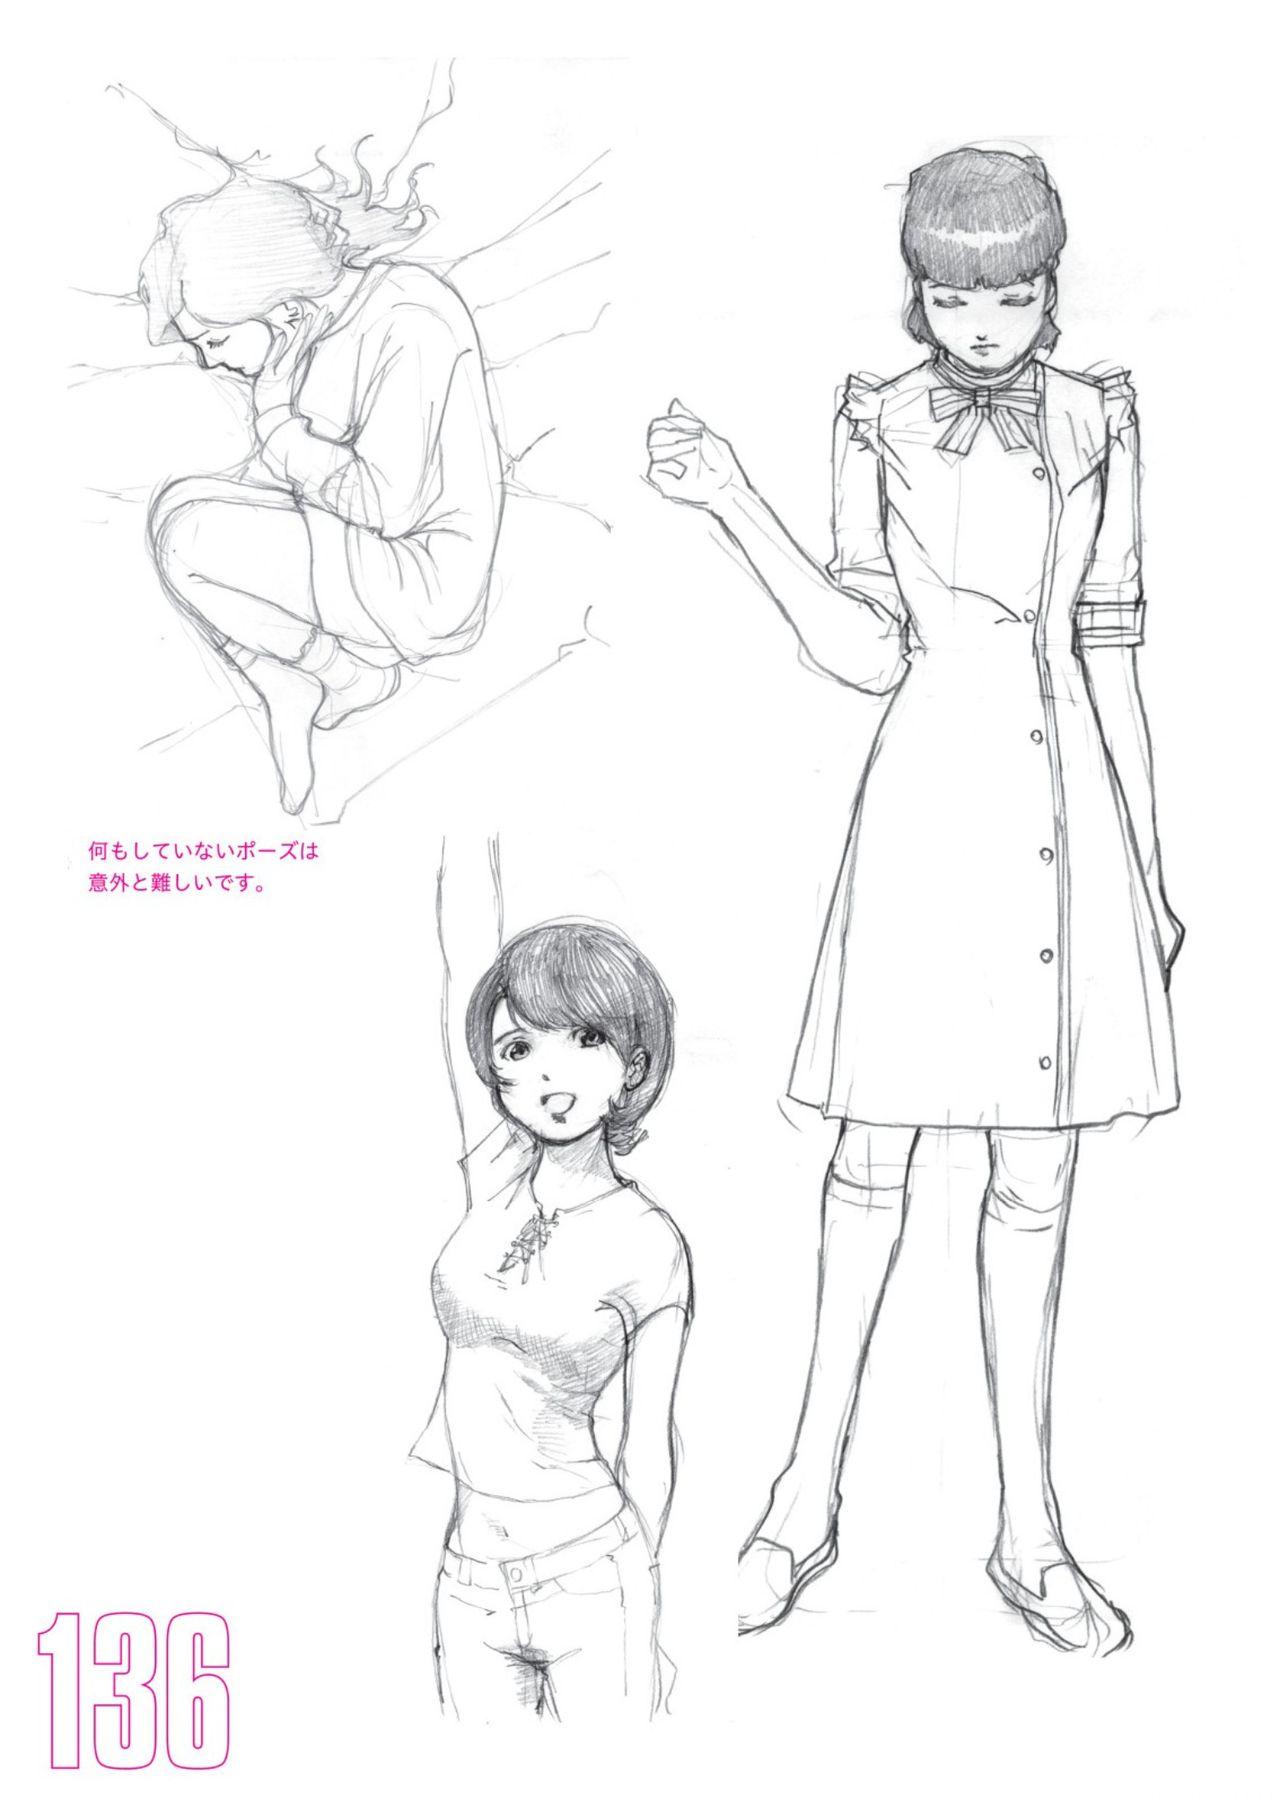 Toru Yoshida Tips for drawing women in 10 minutes 270 Uniforms 137